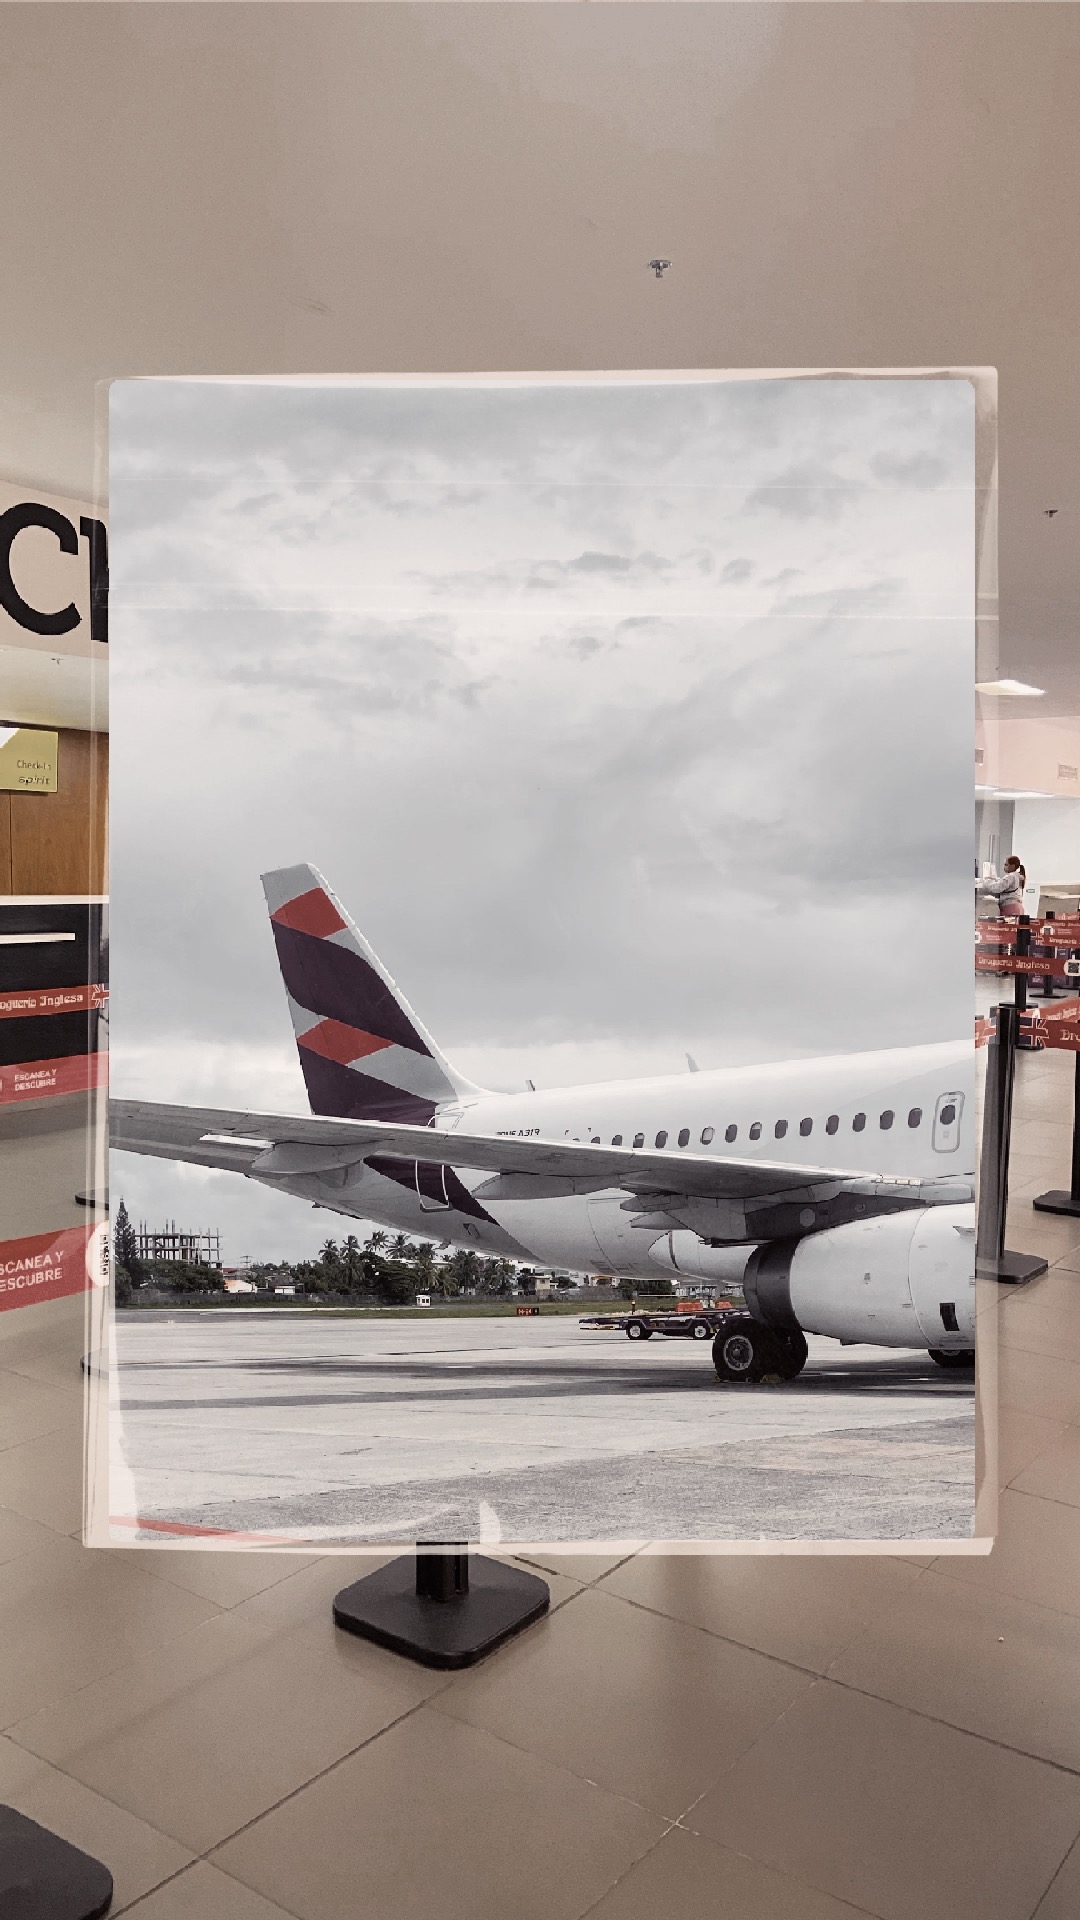 foto estilo vintage de un aeropuerto en donde se ve parte de un avion con colores sepias